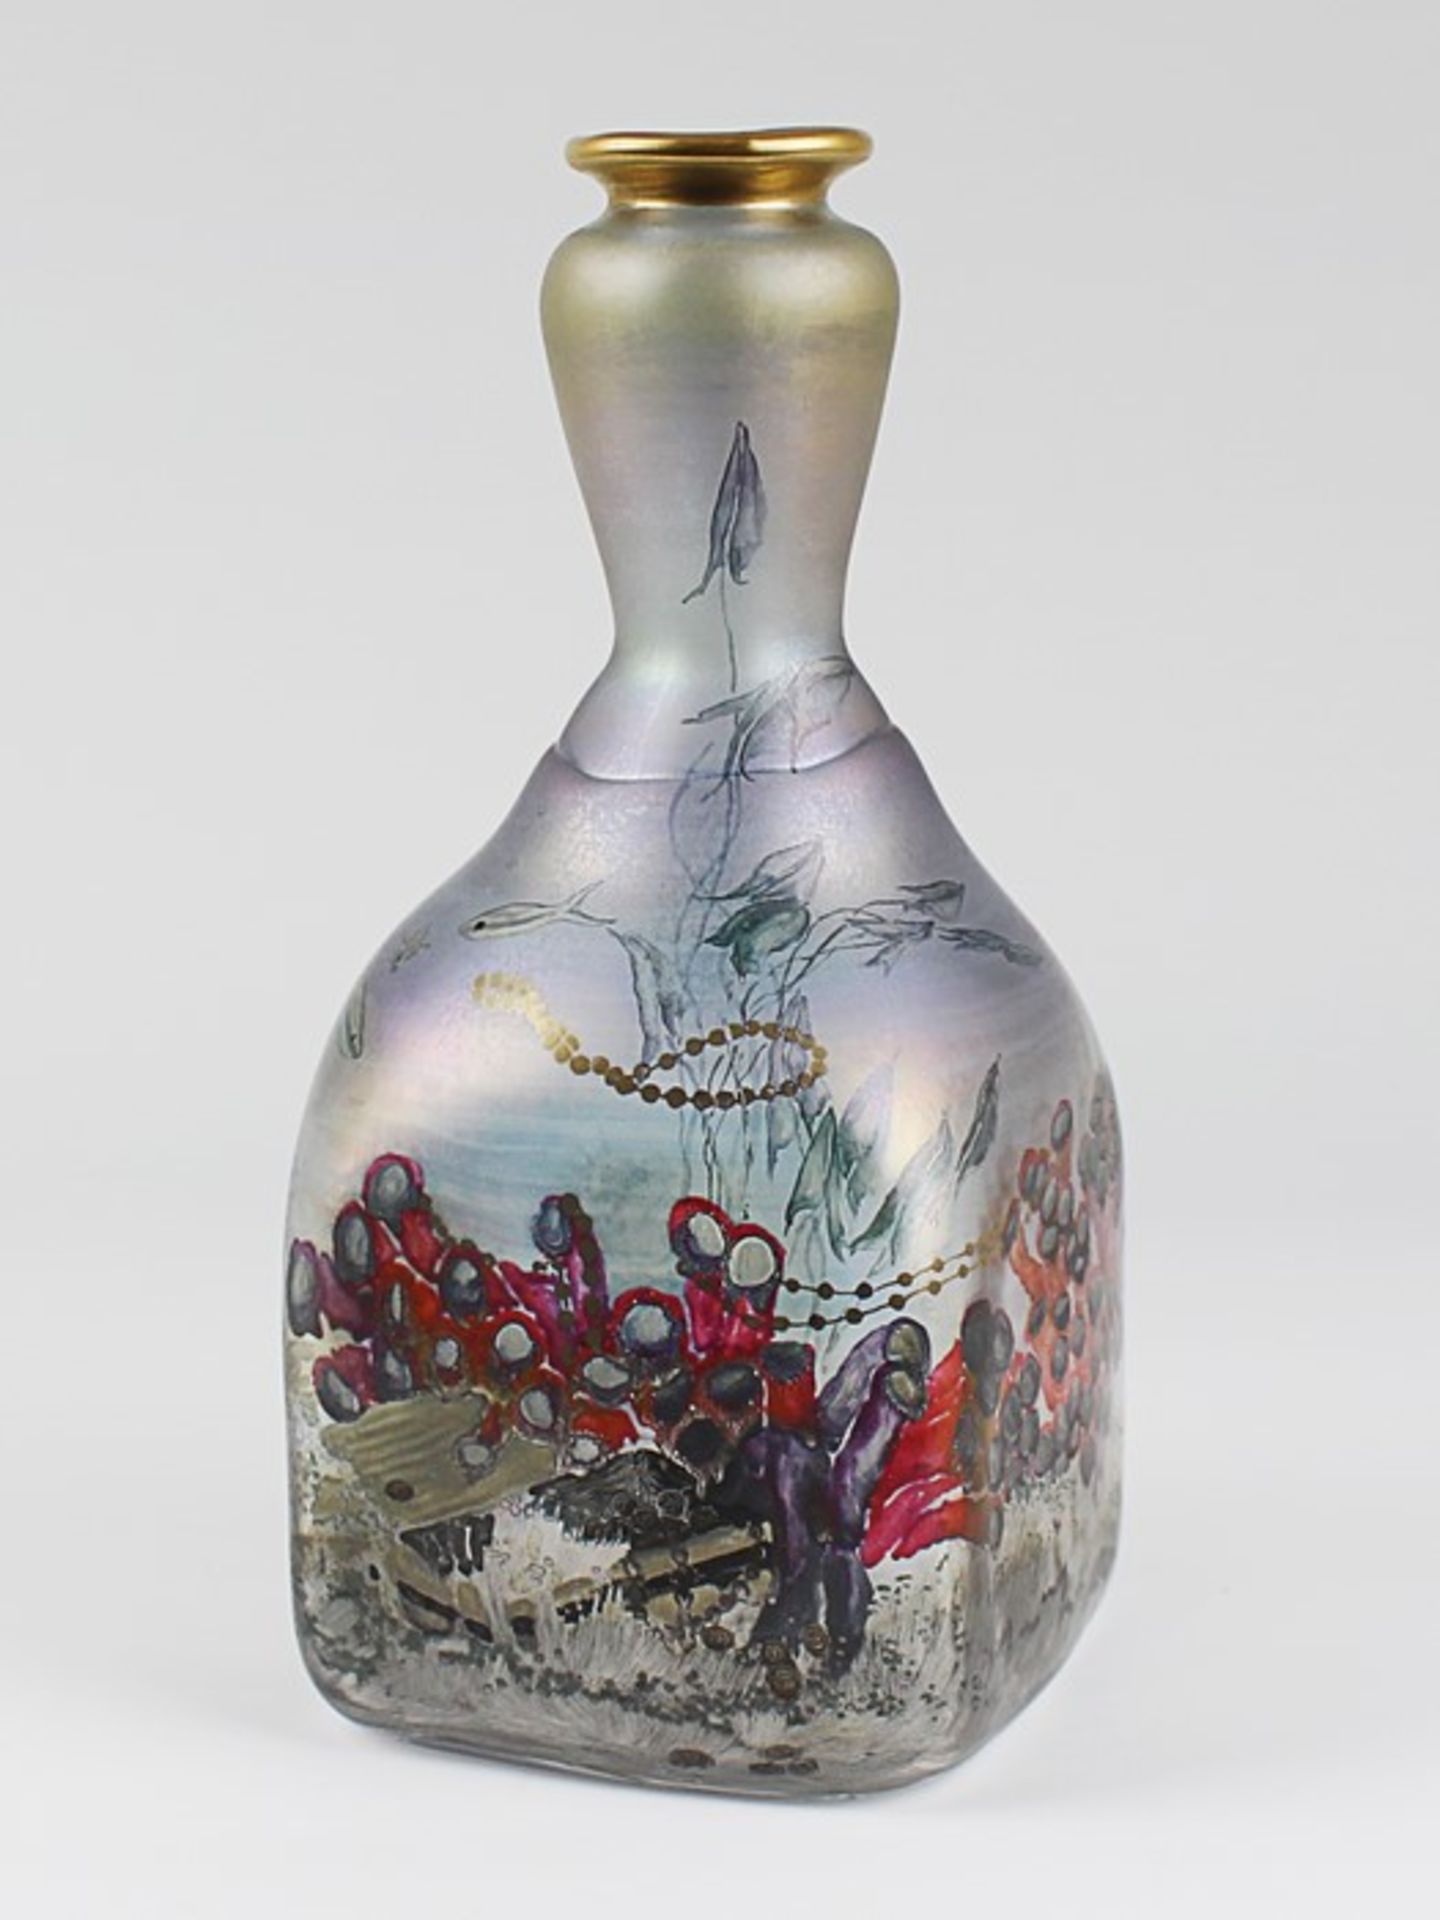 Eisch - Vase1985, Glashütte Eisch, Frauenau, farbloses Glas, quadratischer Stand, geschliffener